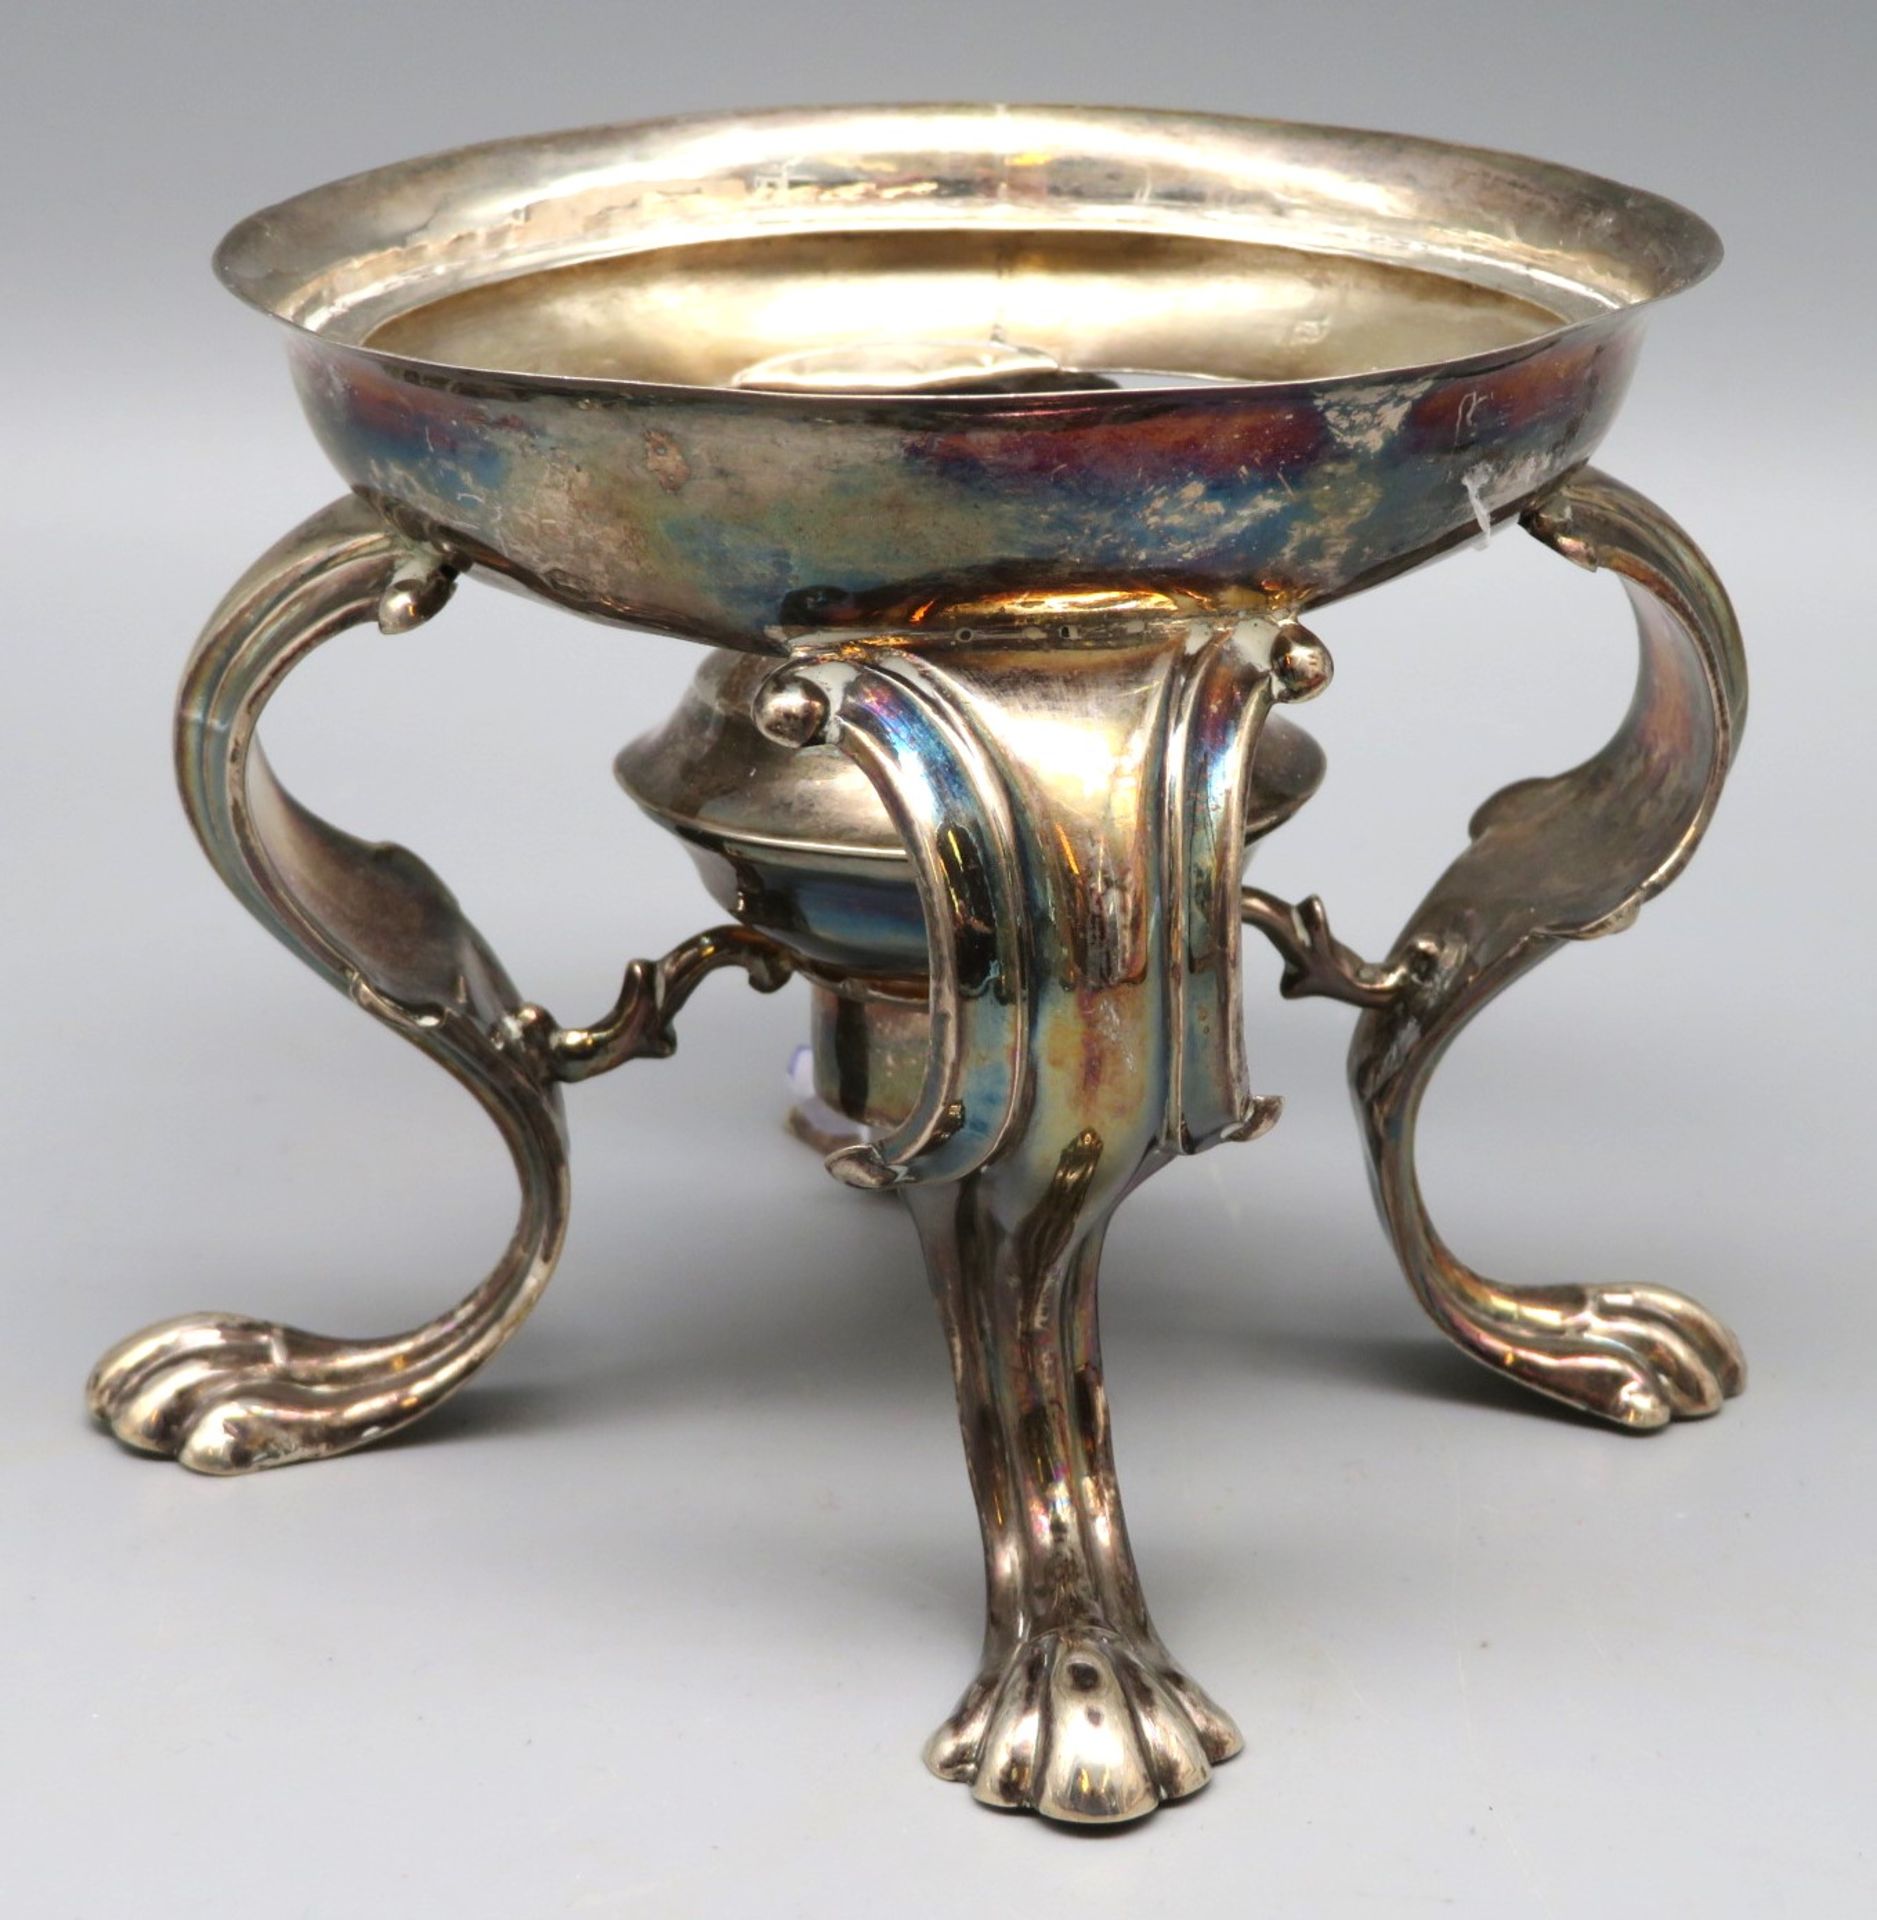 Réchaud, Niederlande, 19. Jahrhundert, Silber 835/000, punziert, 154 g, auf 4 Tatzenfüßen, h 10 cm,